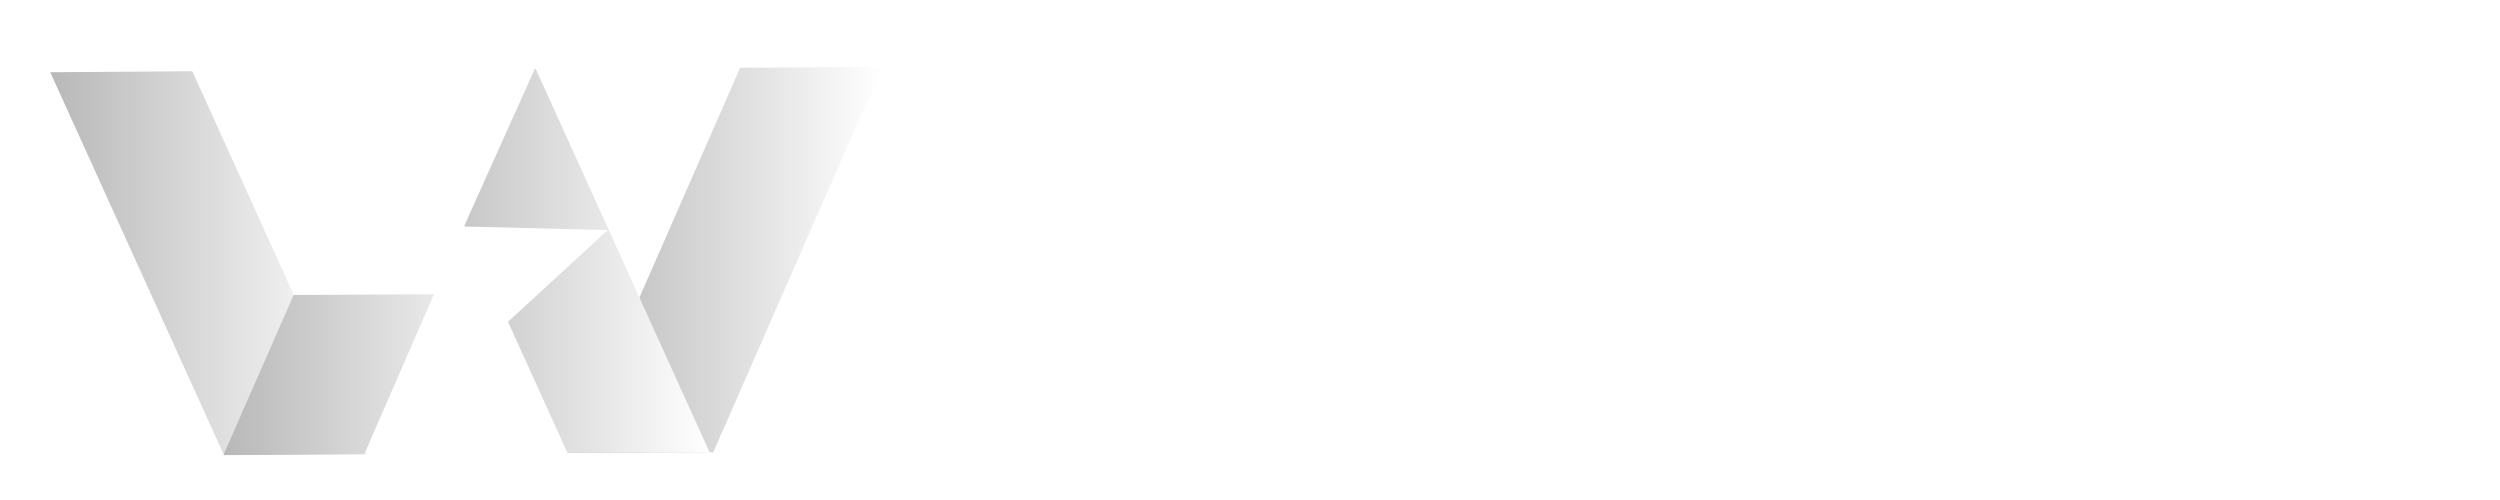 Webytron